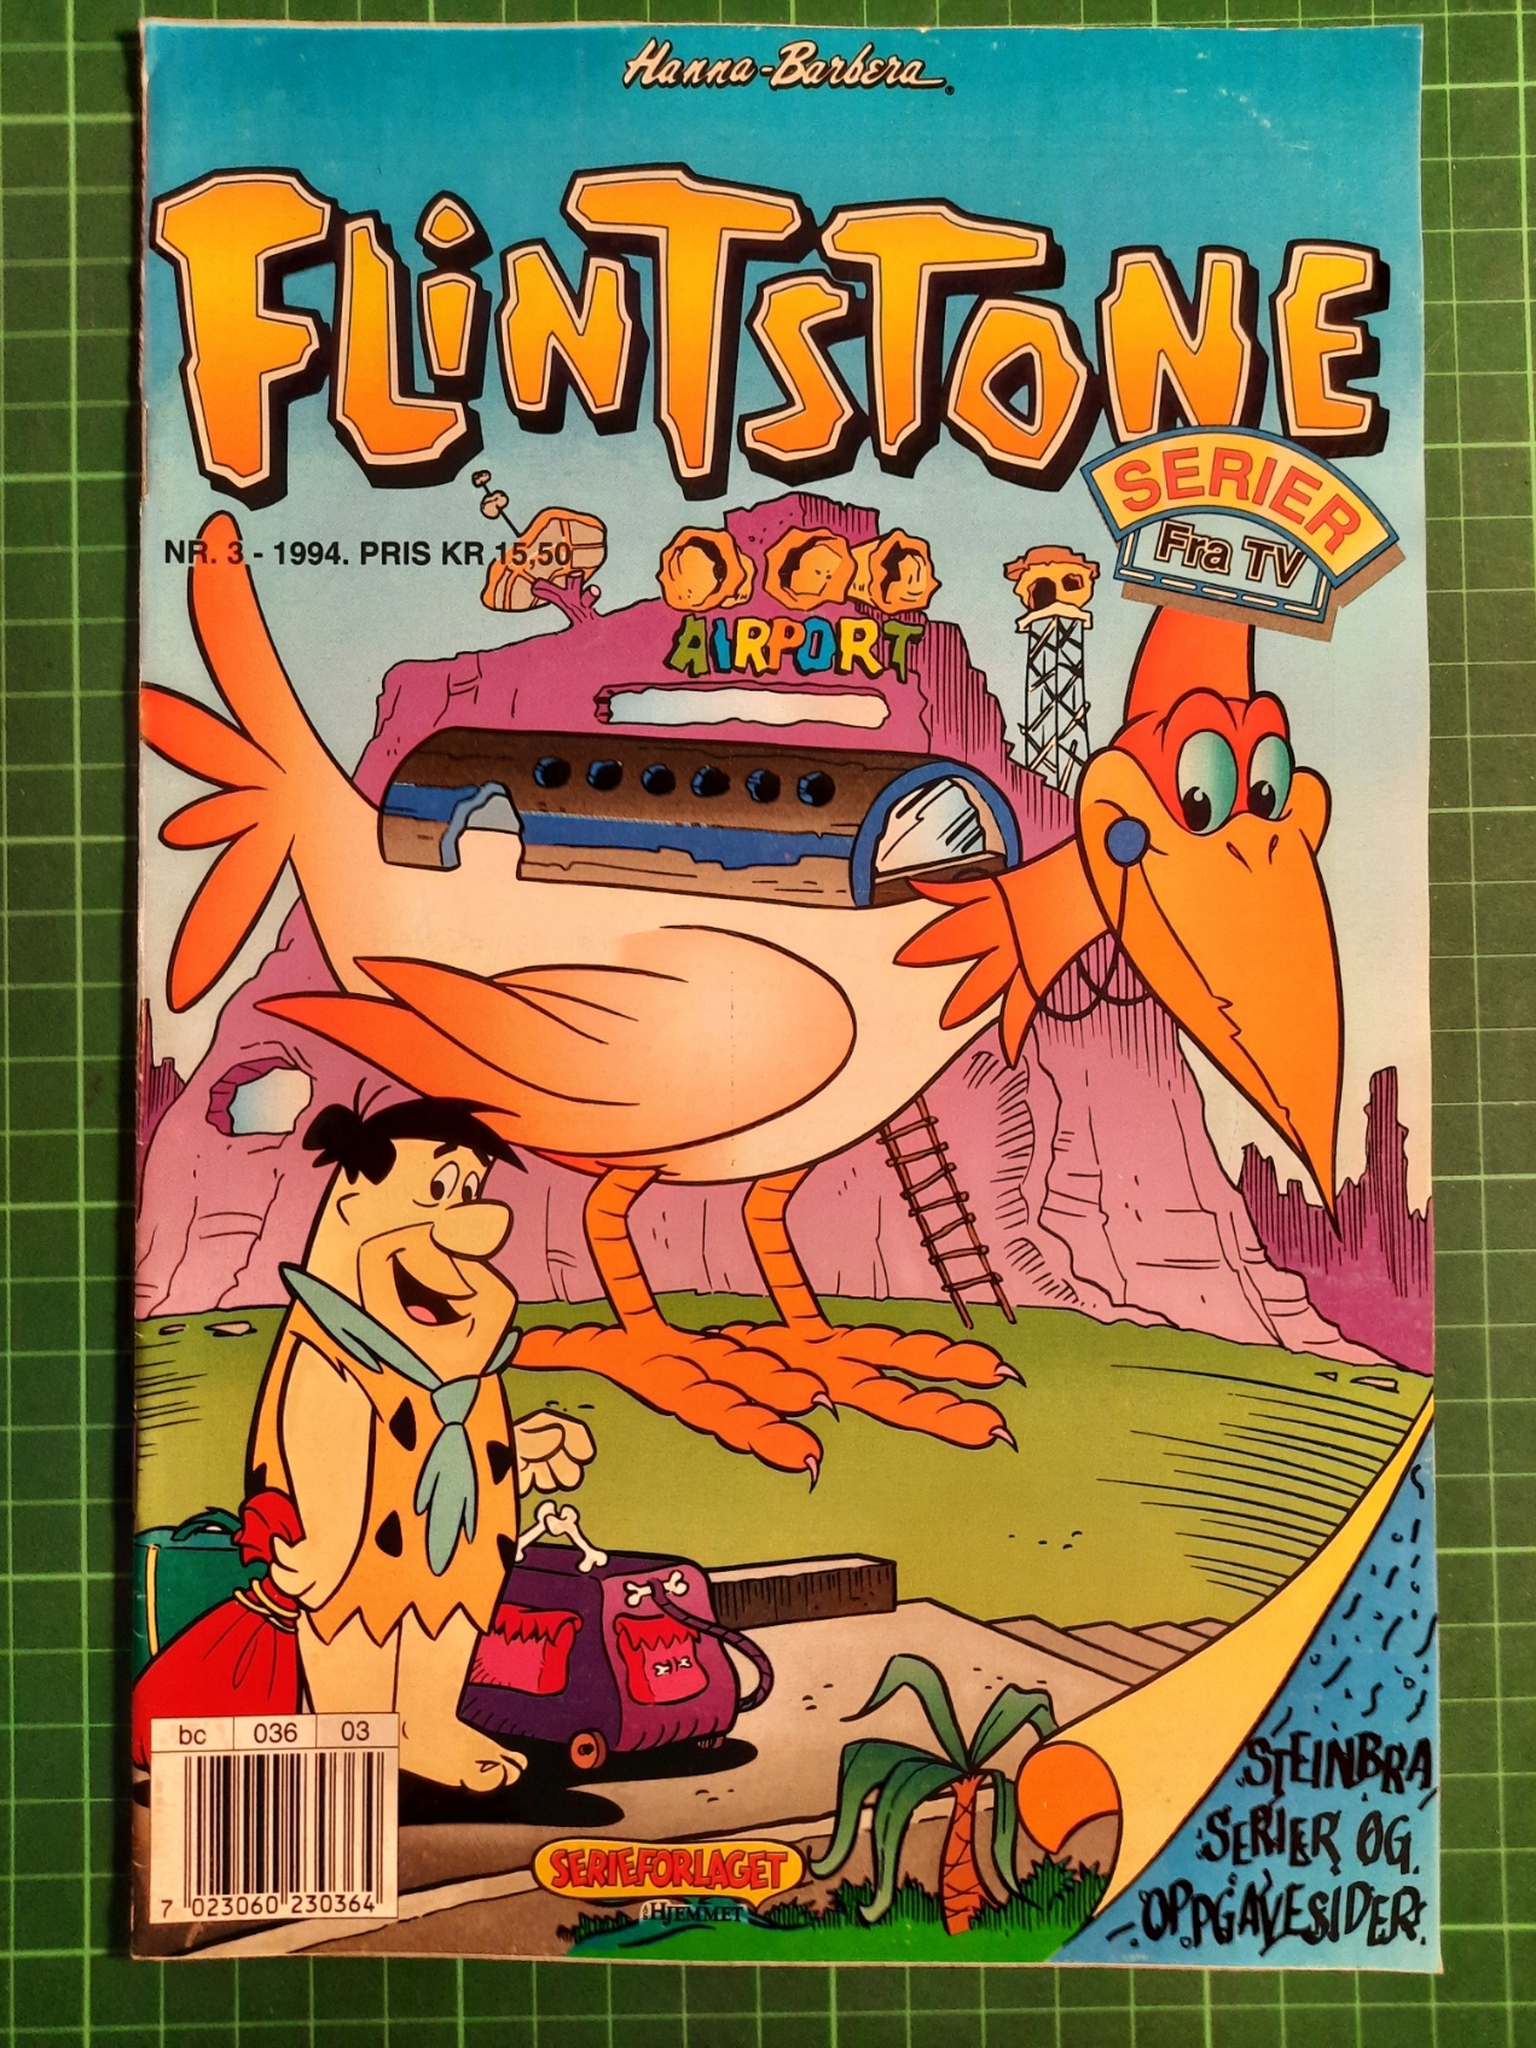 Flintstone 1994 - 03